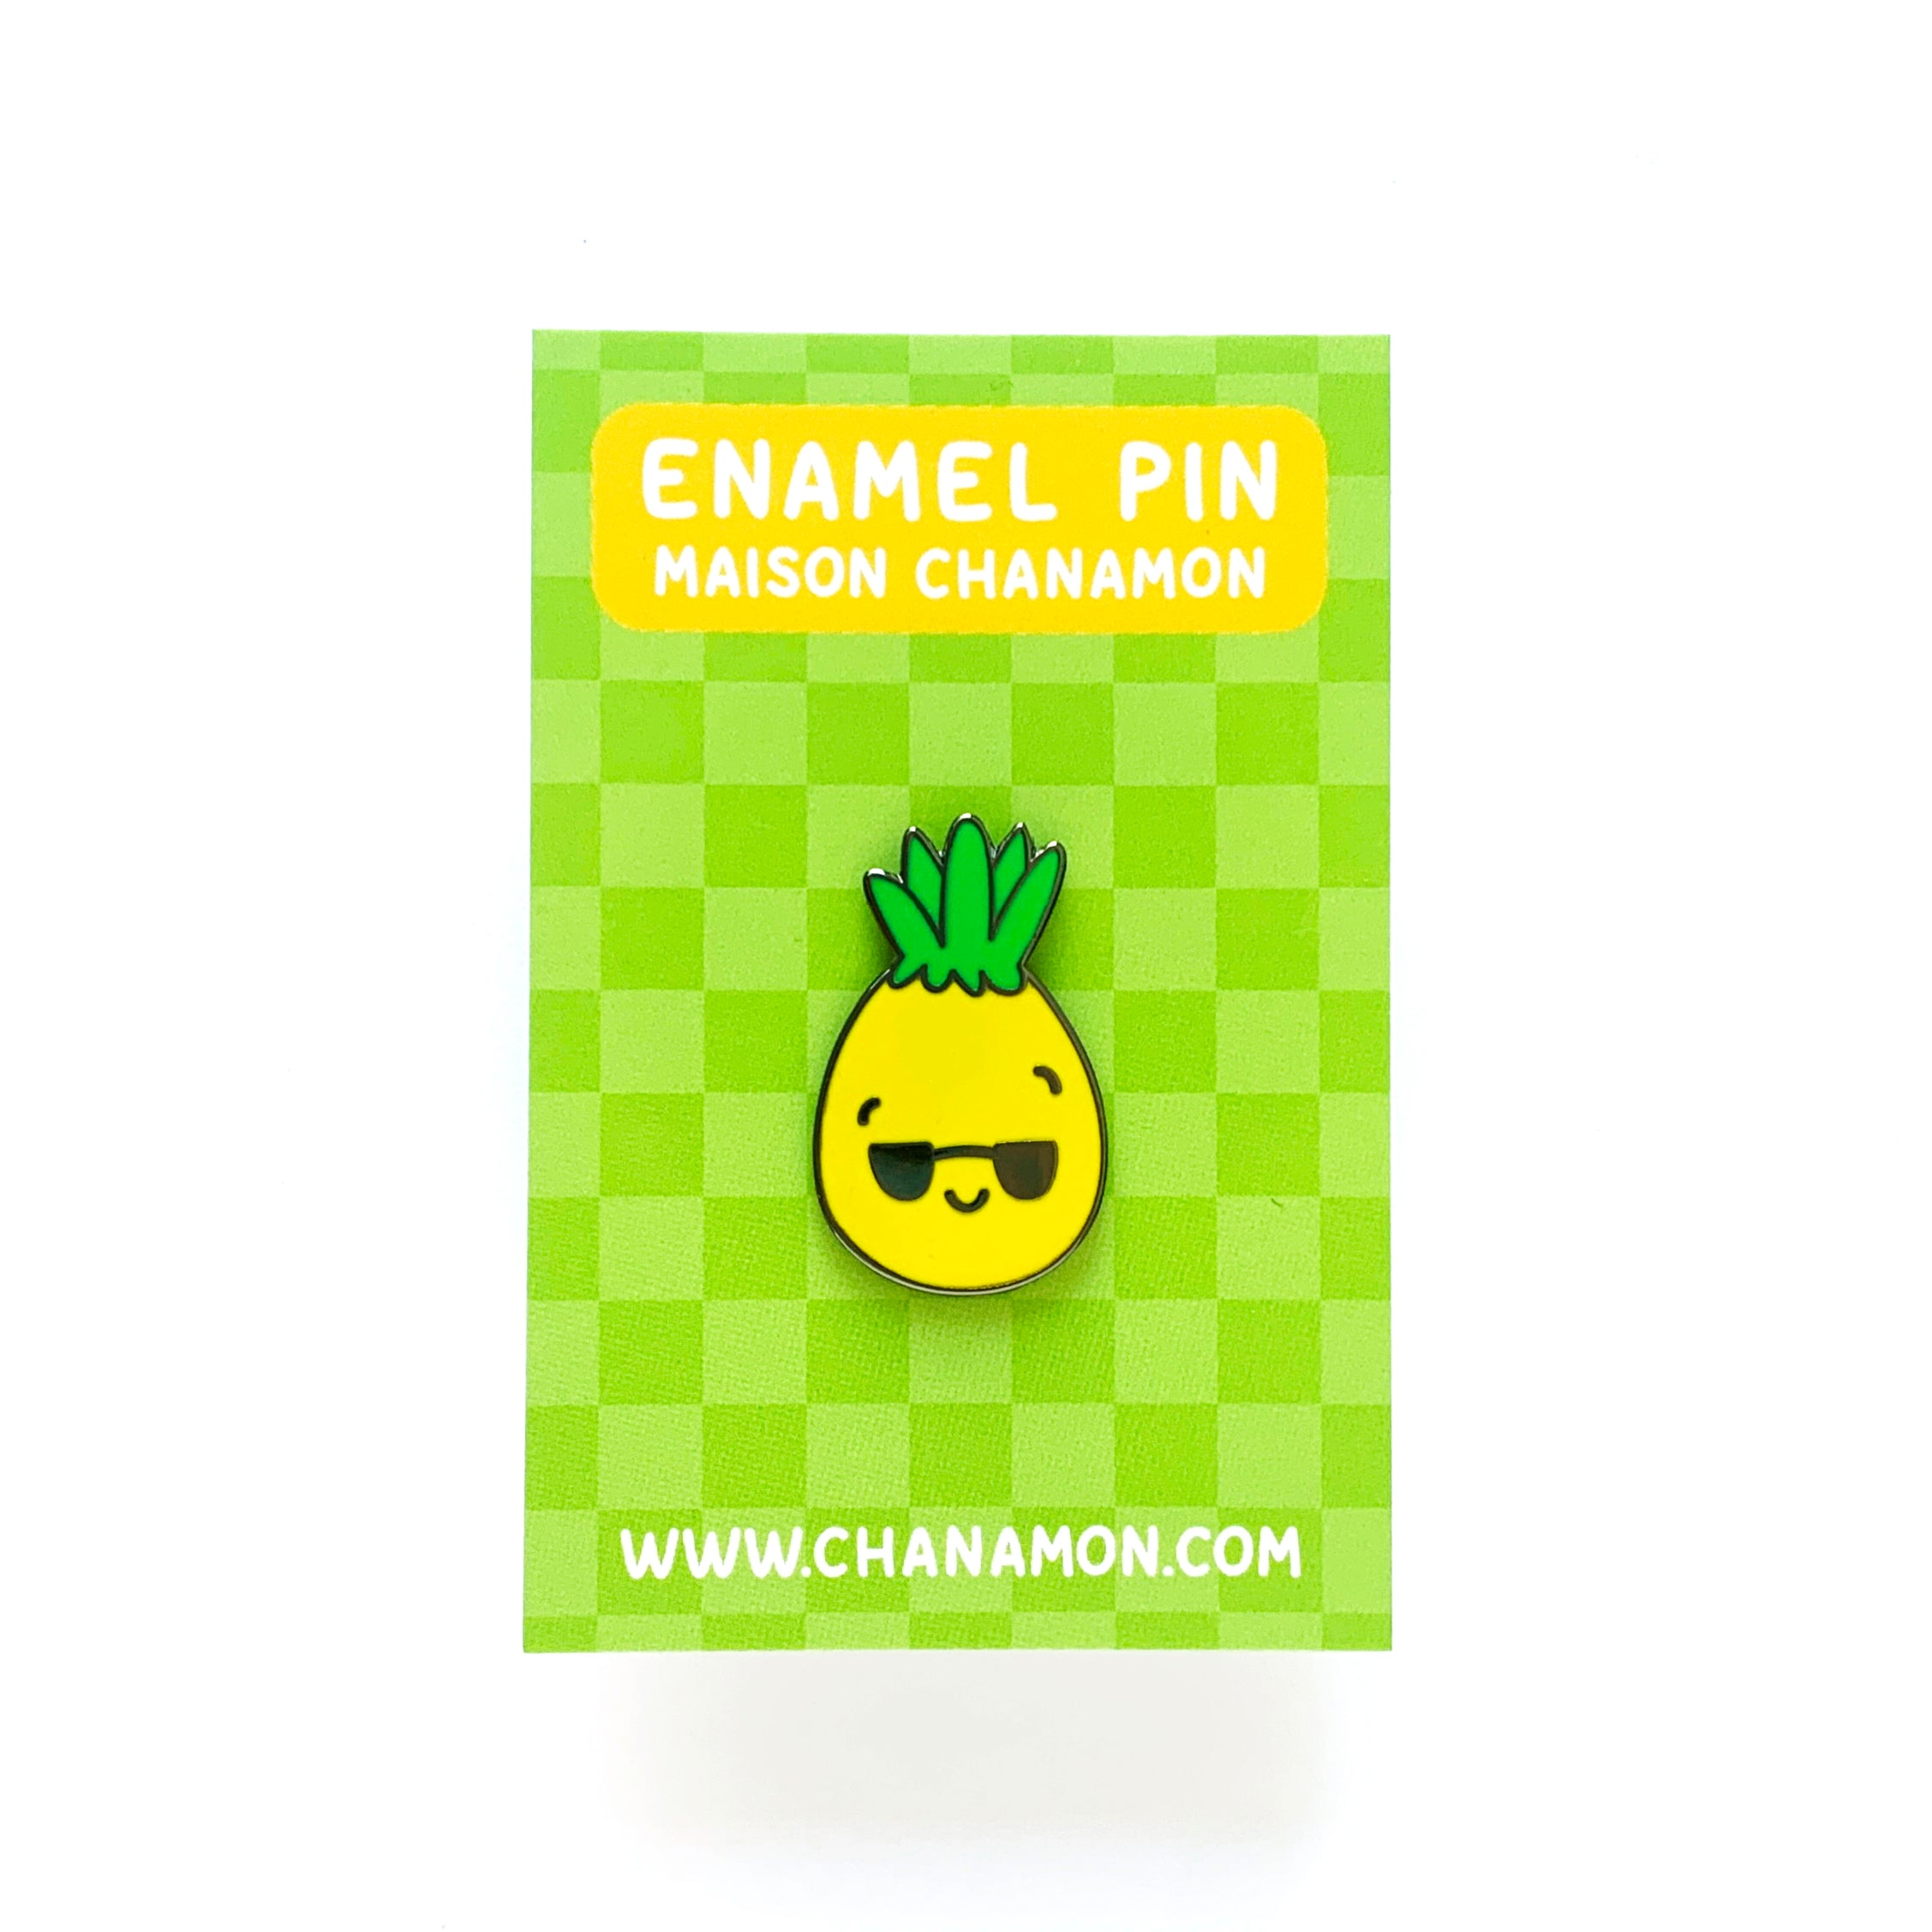 Cool Pineapple Enamel Pin